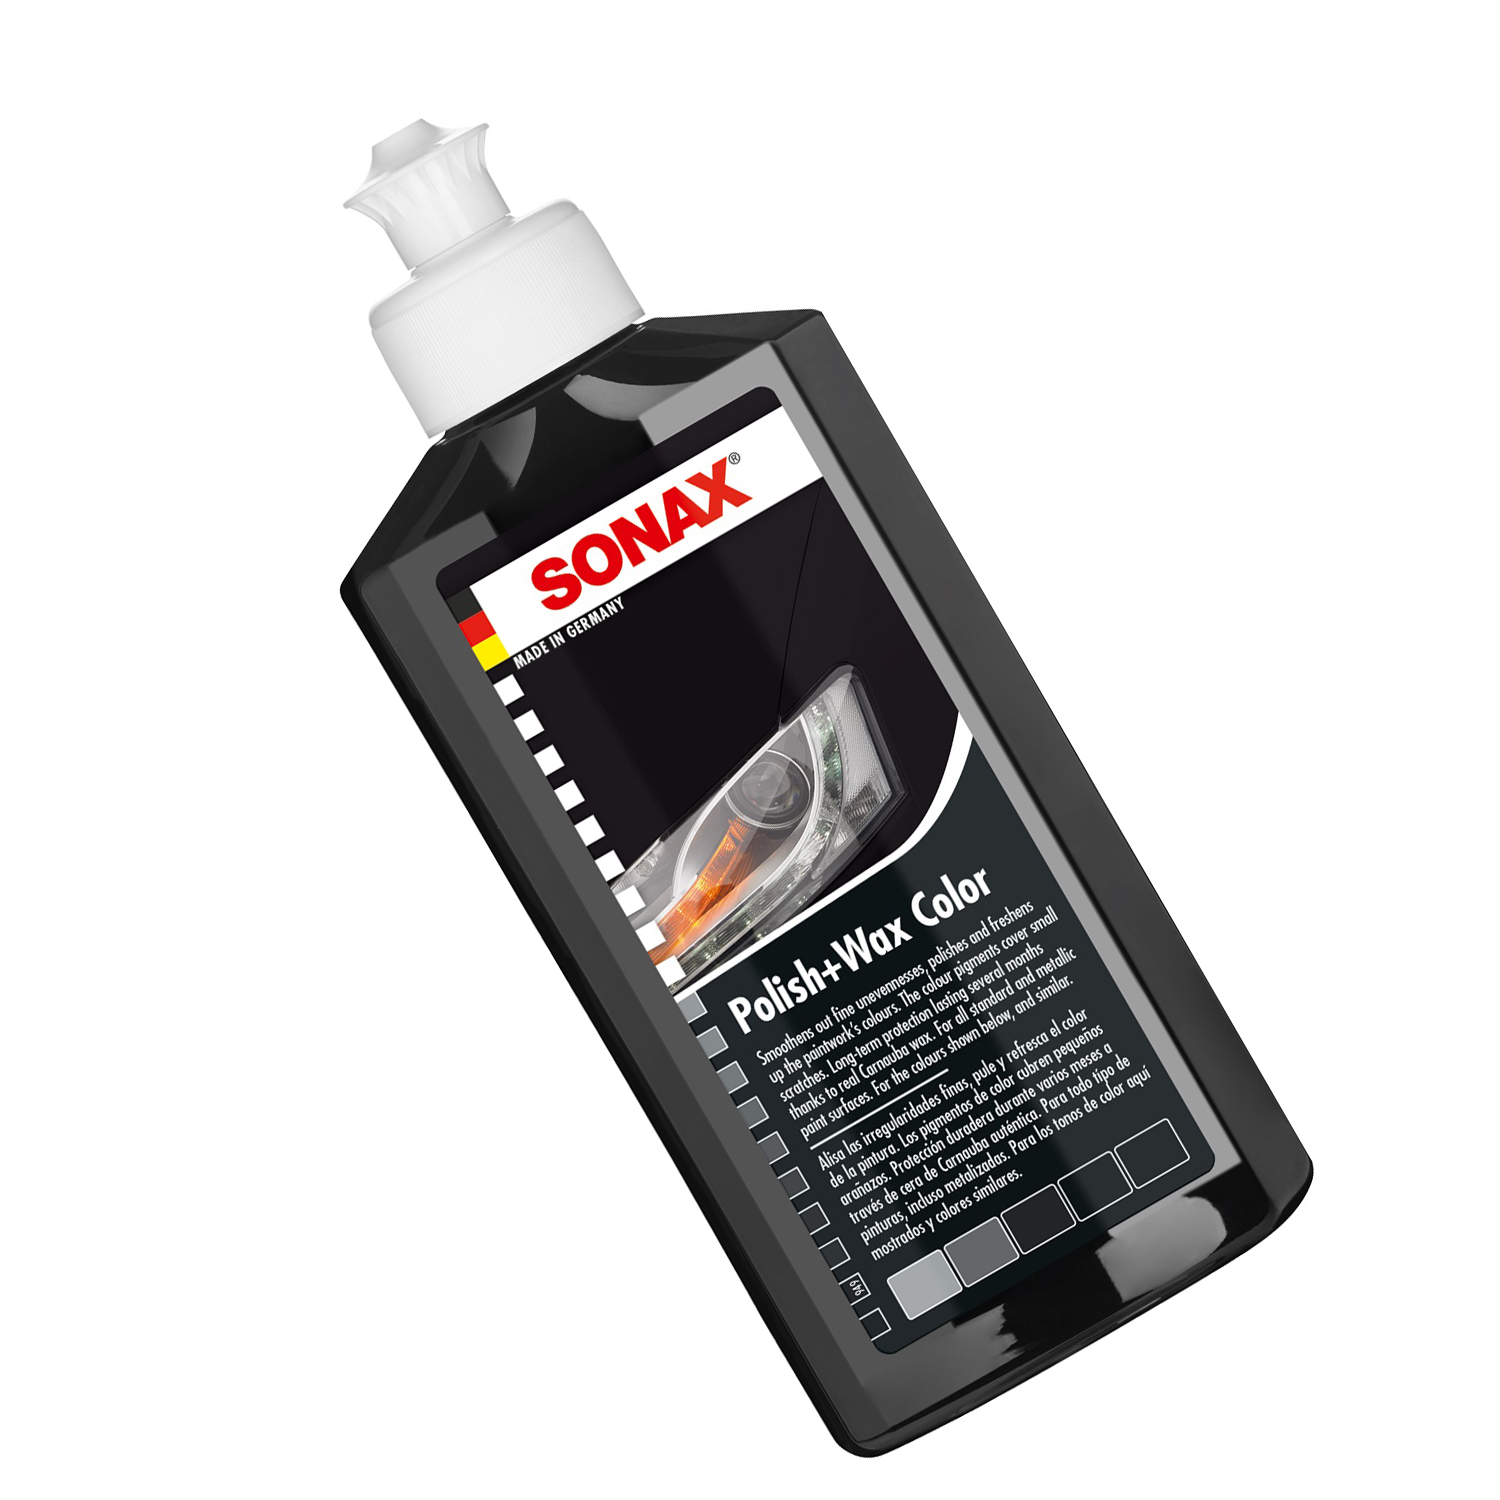 Kem đánh bóng và bảo vệ sơn màu đen xe ô tô Sonax 296141 250ml - Che phủ vết xước nhỏ, phục hồi sơn cũ, tăng độ mịn cho mặt sơn